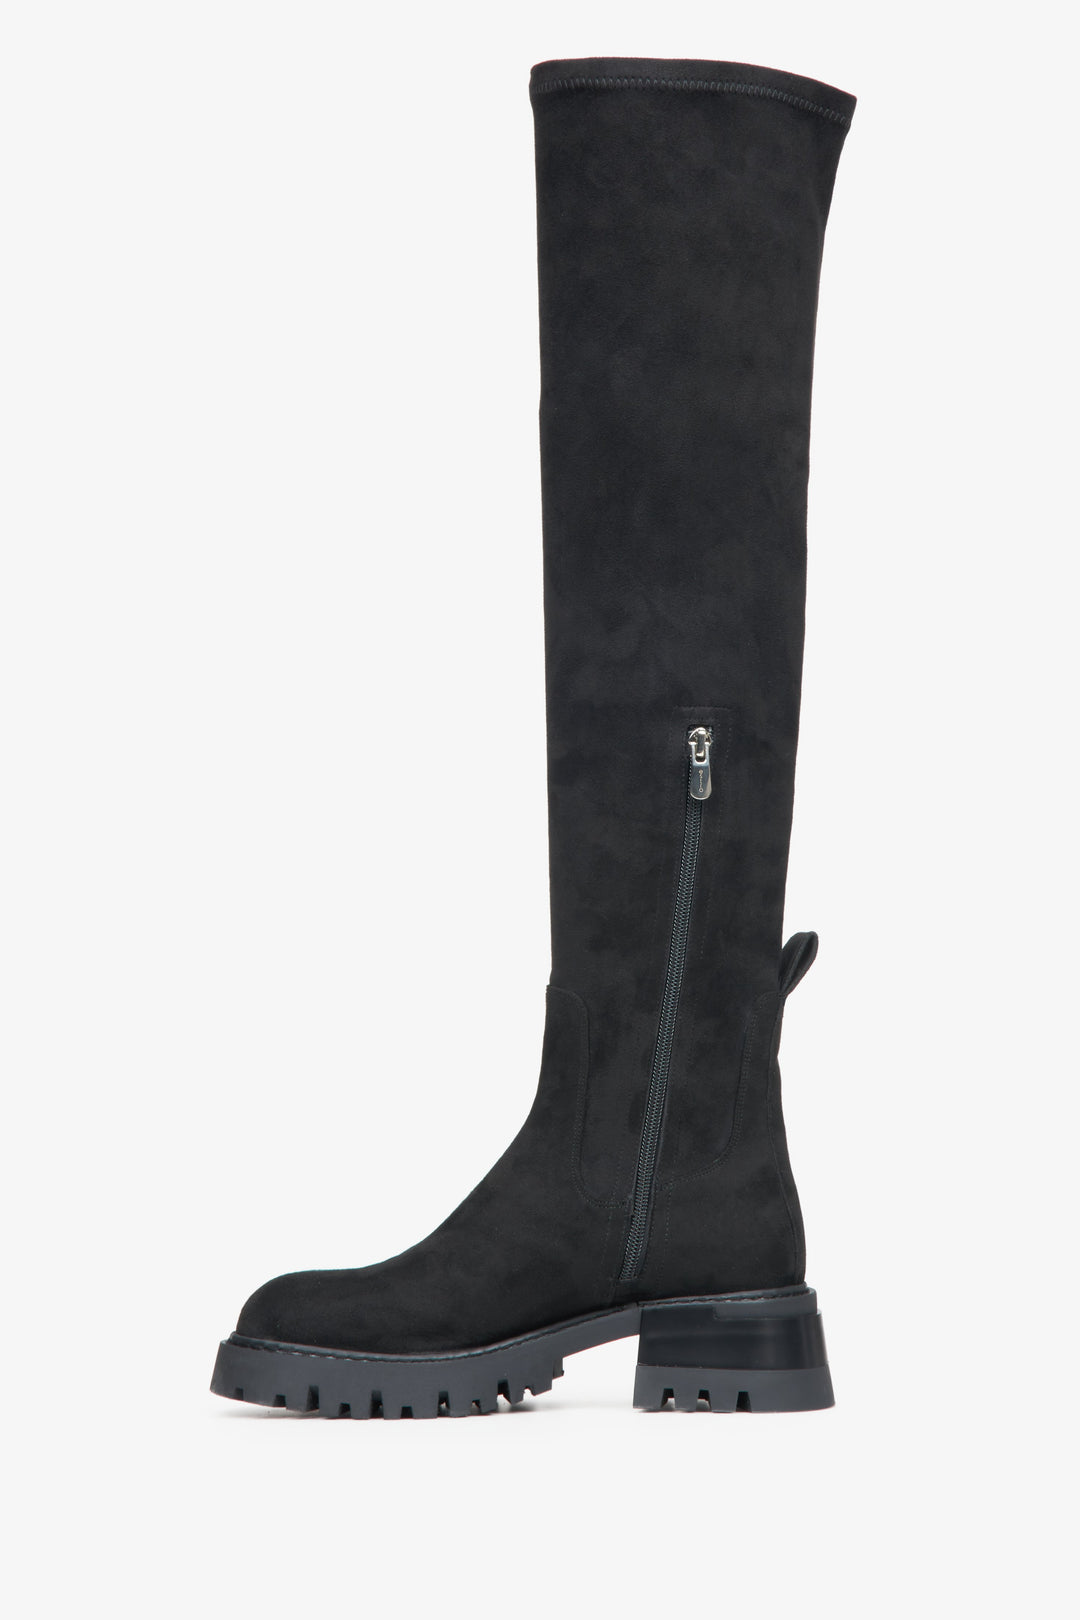 Women's black velour boots by Estro - shoe profile.